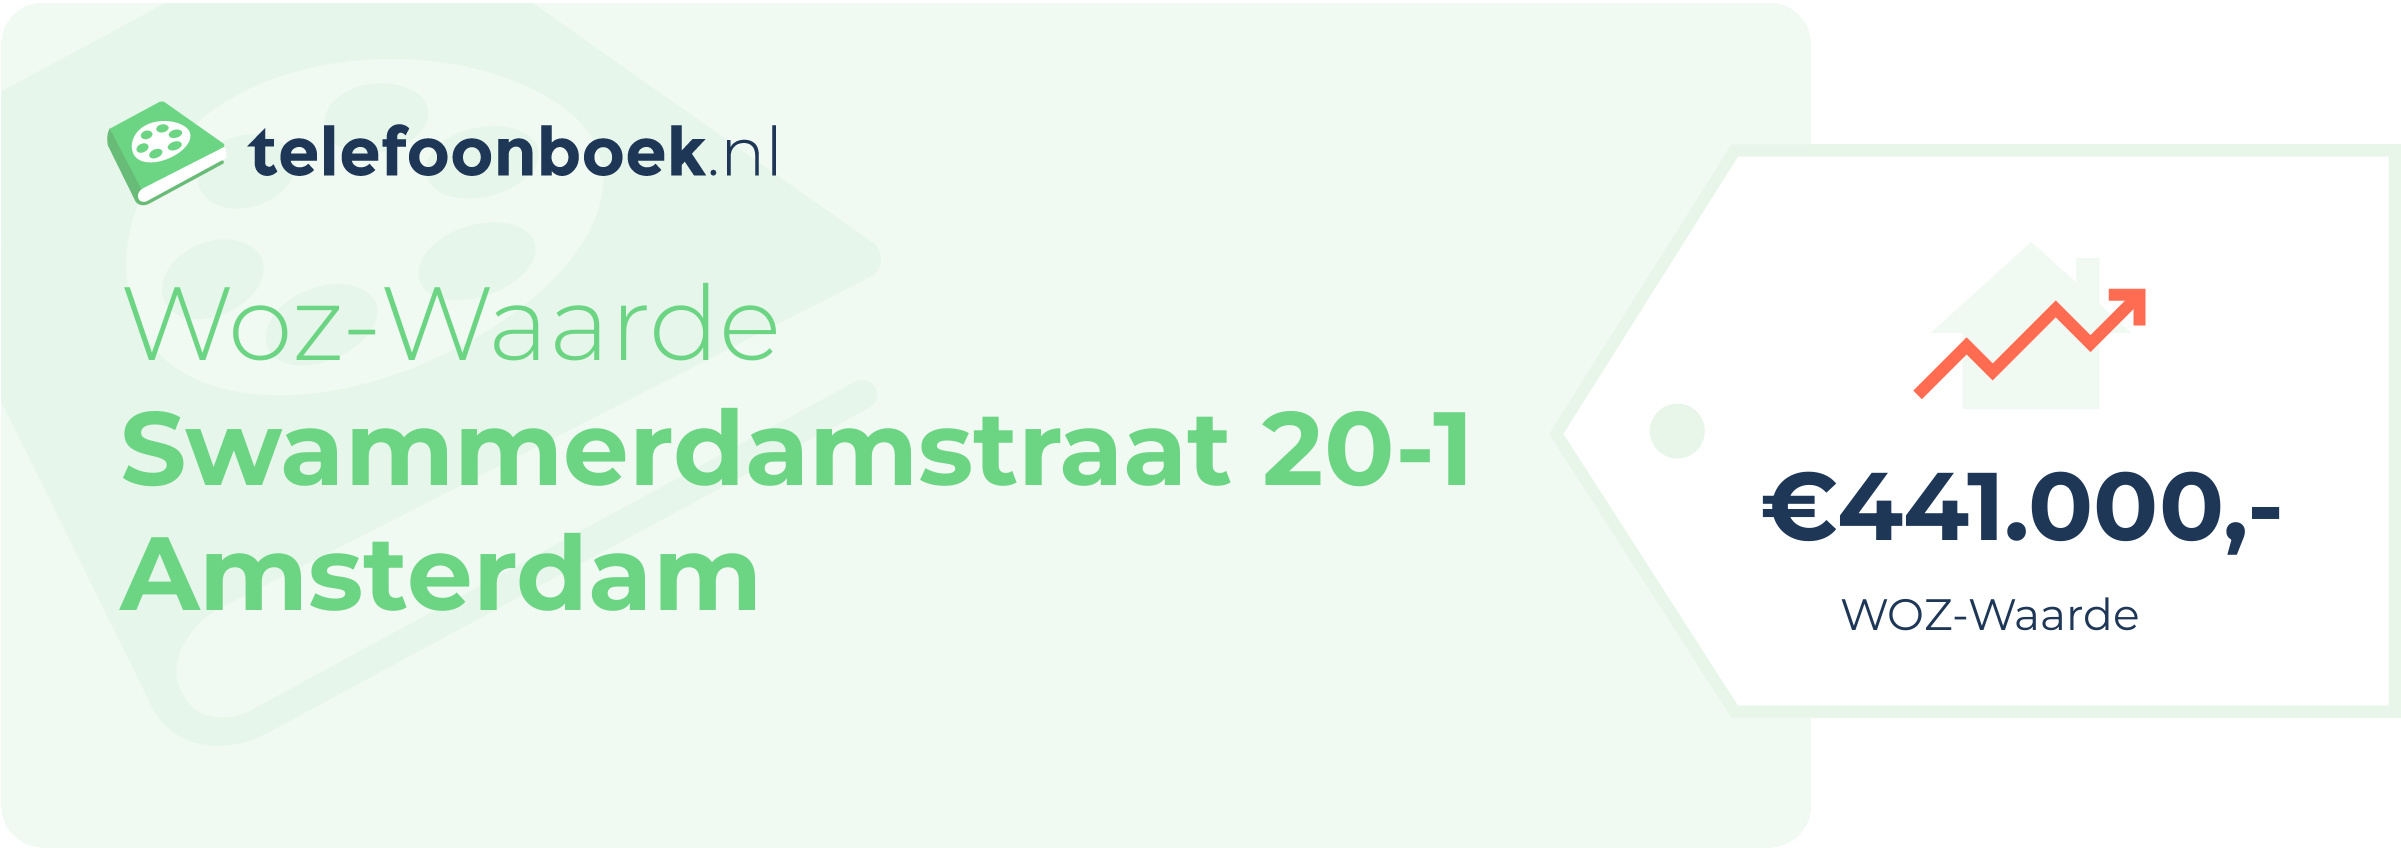 WOZ-waarde Swammerdamstraat 20-1 Amsterdam